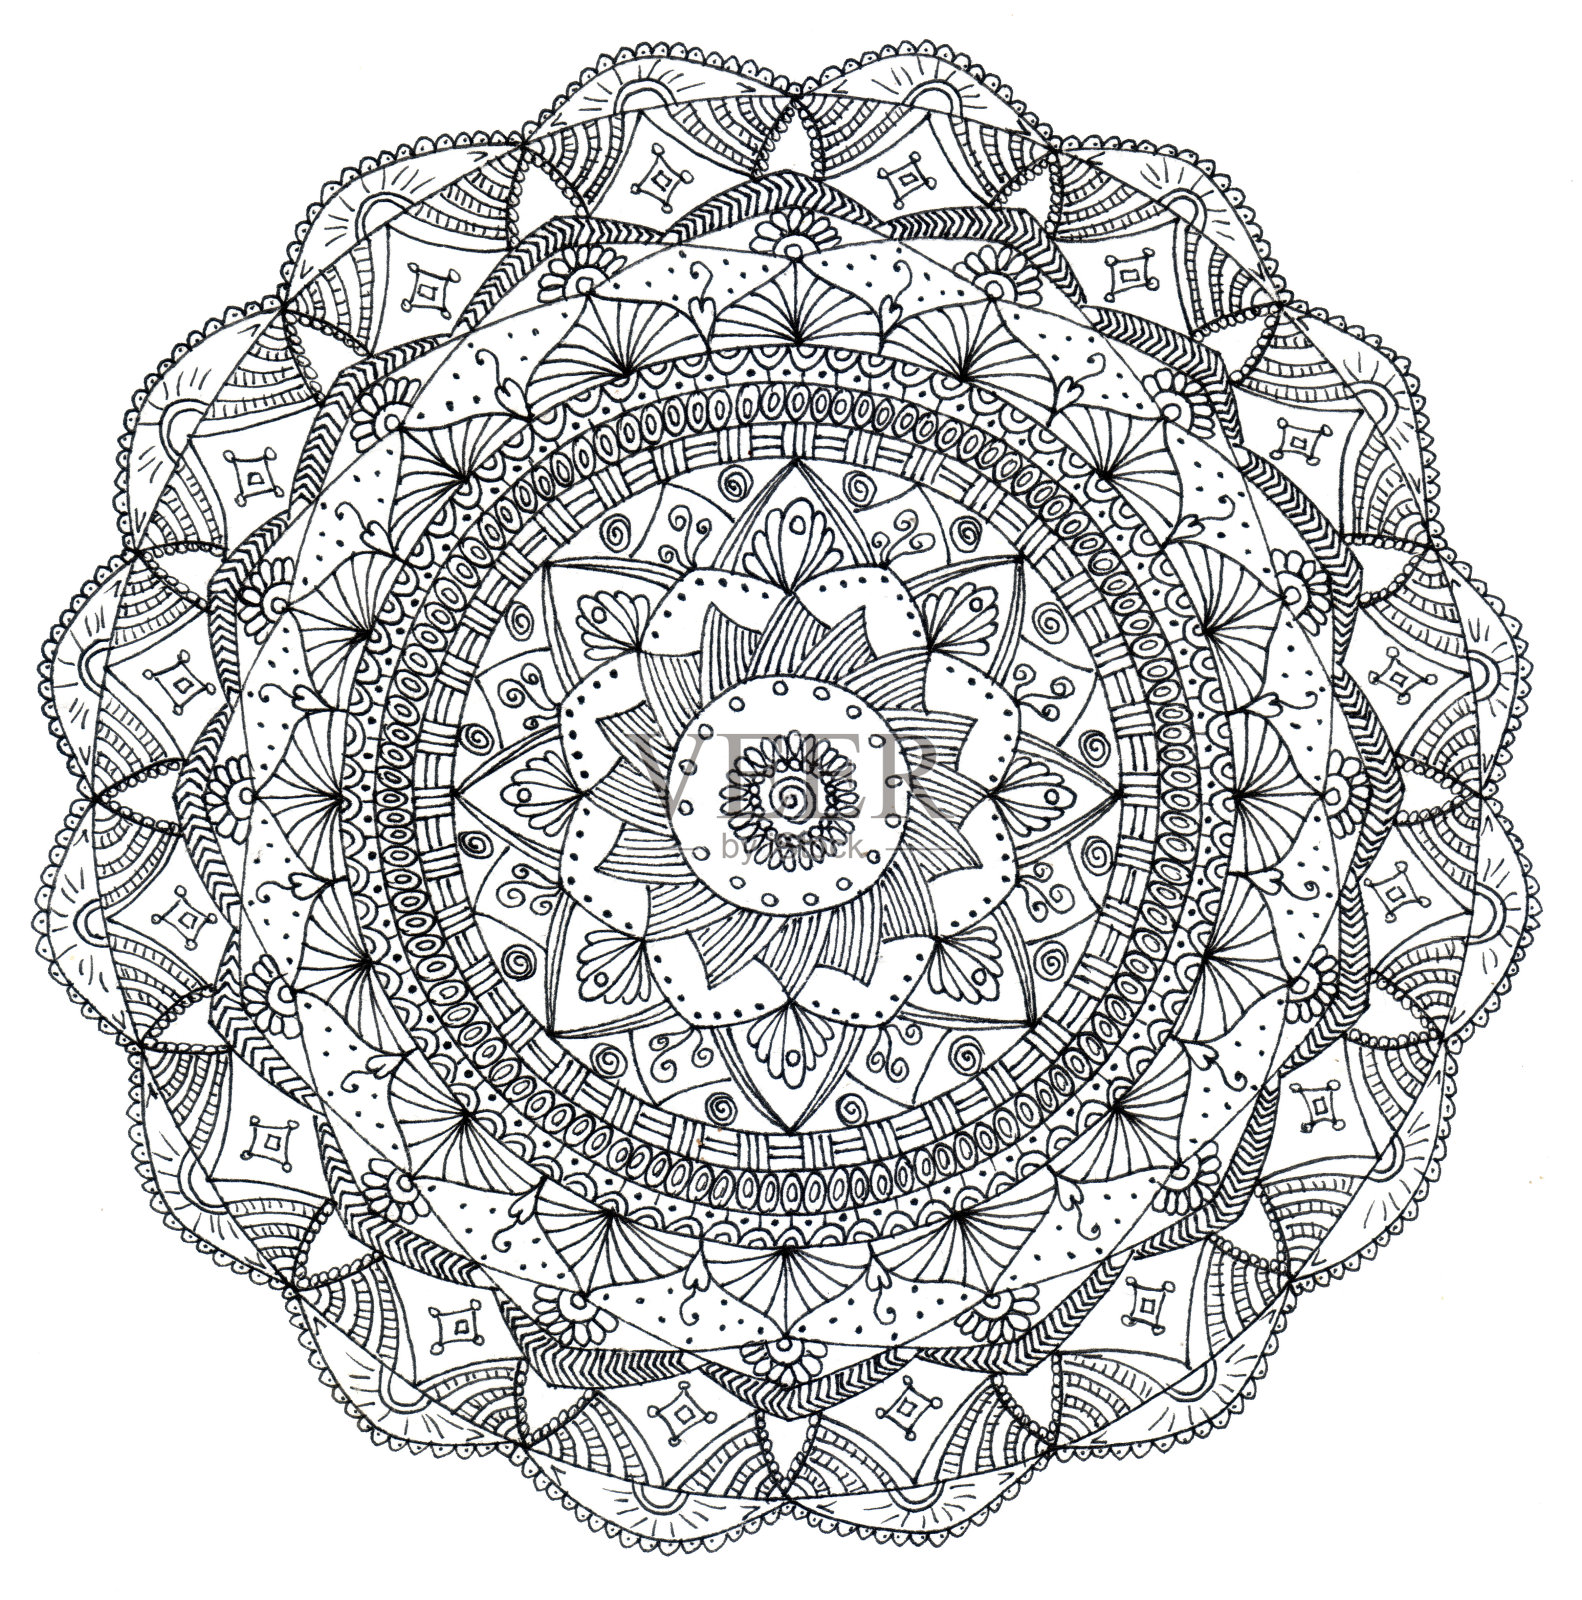 曼荼罗-一个封闭的几何系统，从一个中心点等距的元素。在佛教和印度教的宗教和深奥实践中使用的神圣的图示或构造。插画图片素材